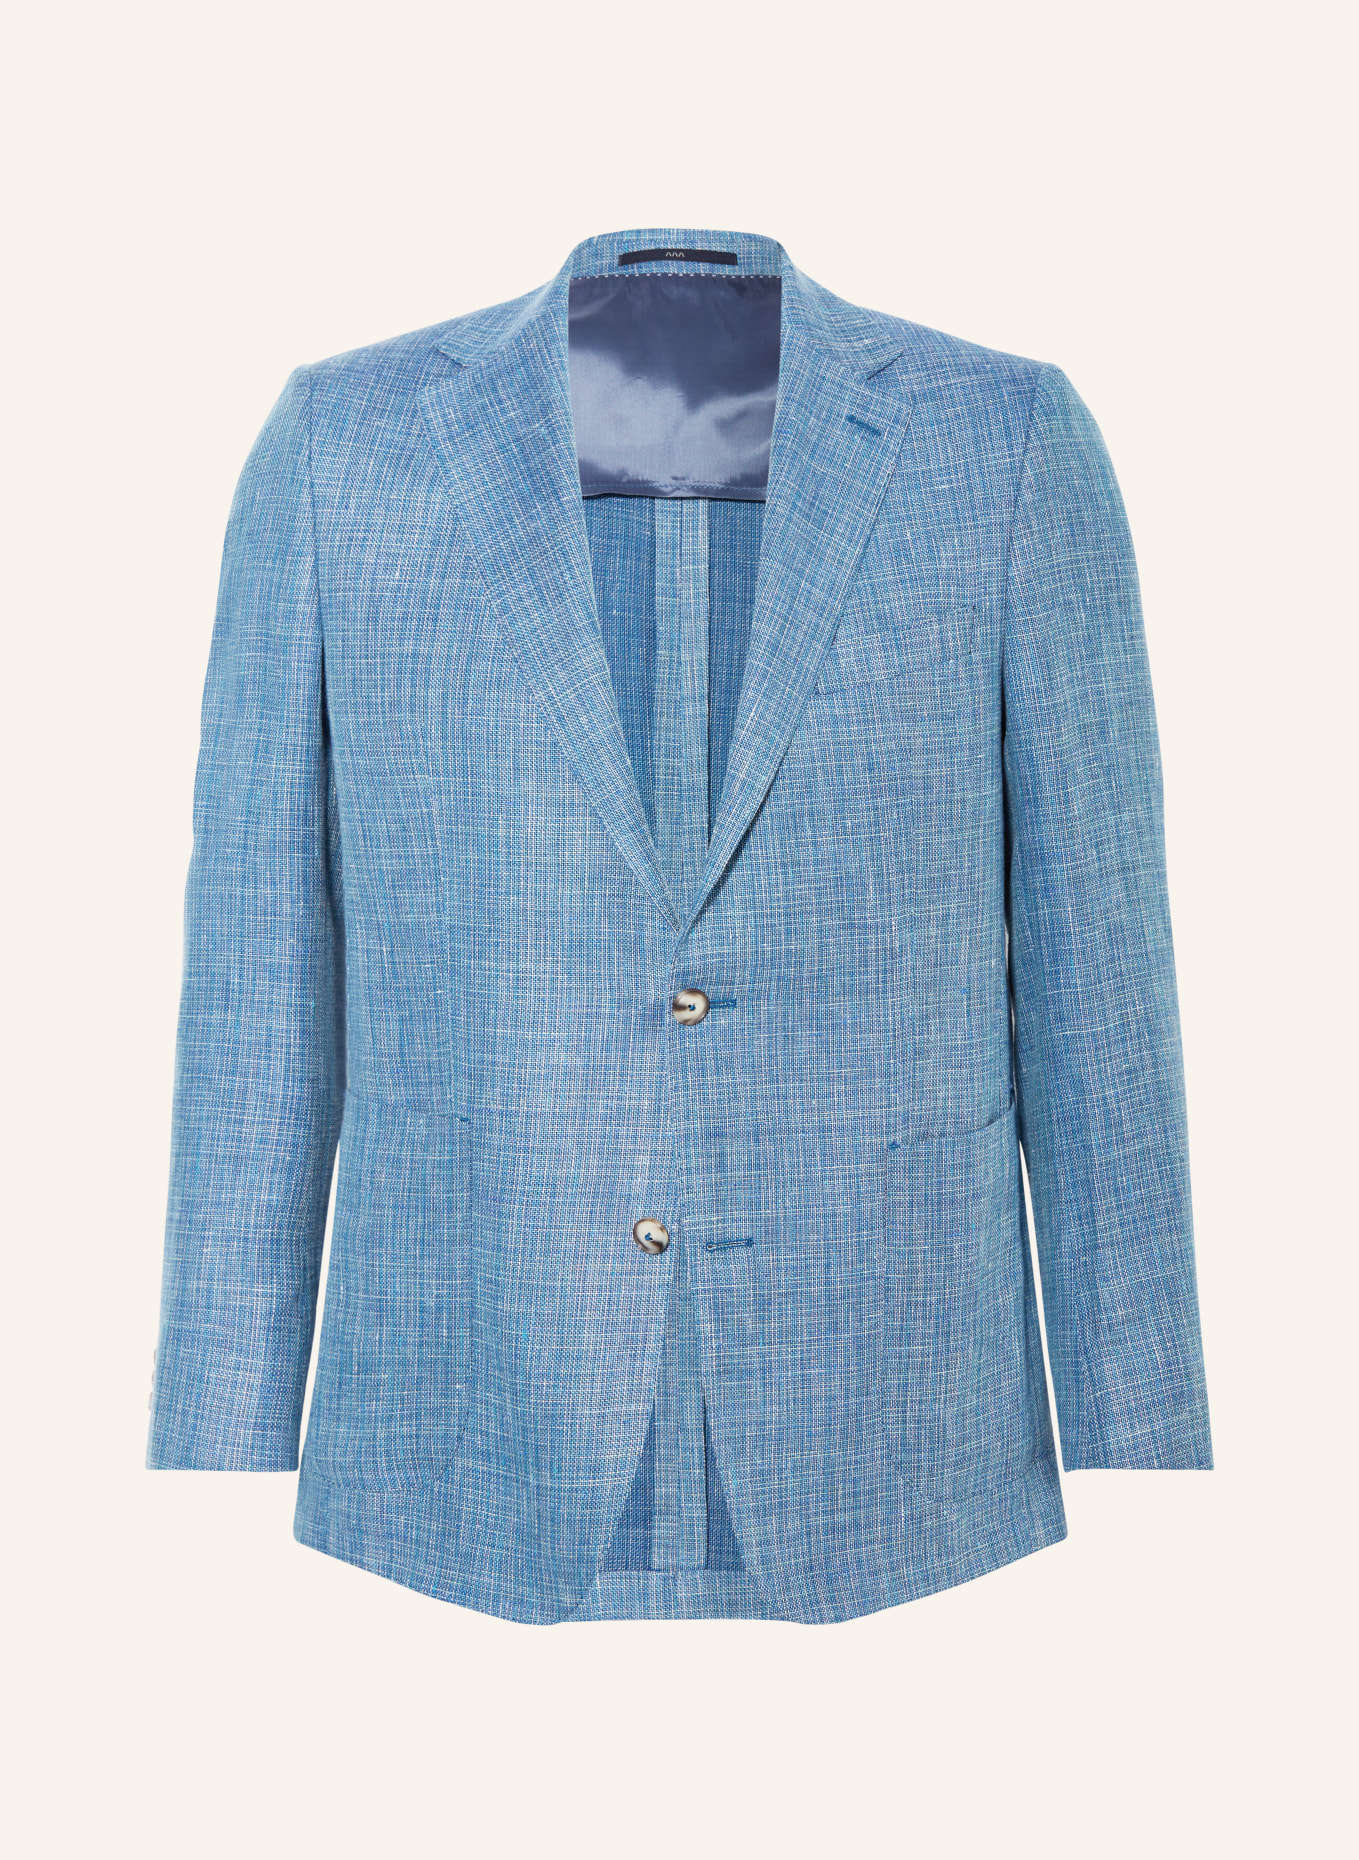 EDUARD DRESSLER Tailored jacket MATTEO comfort fit with linen, Color: 039 HELLBLAU (Image 1)